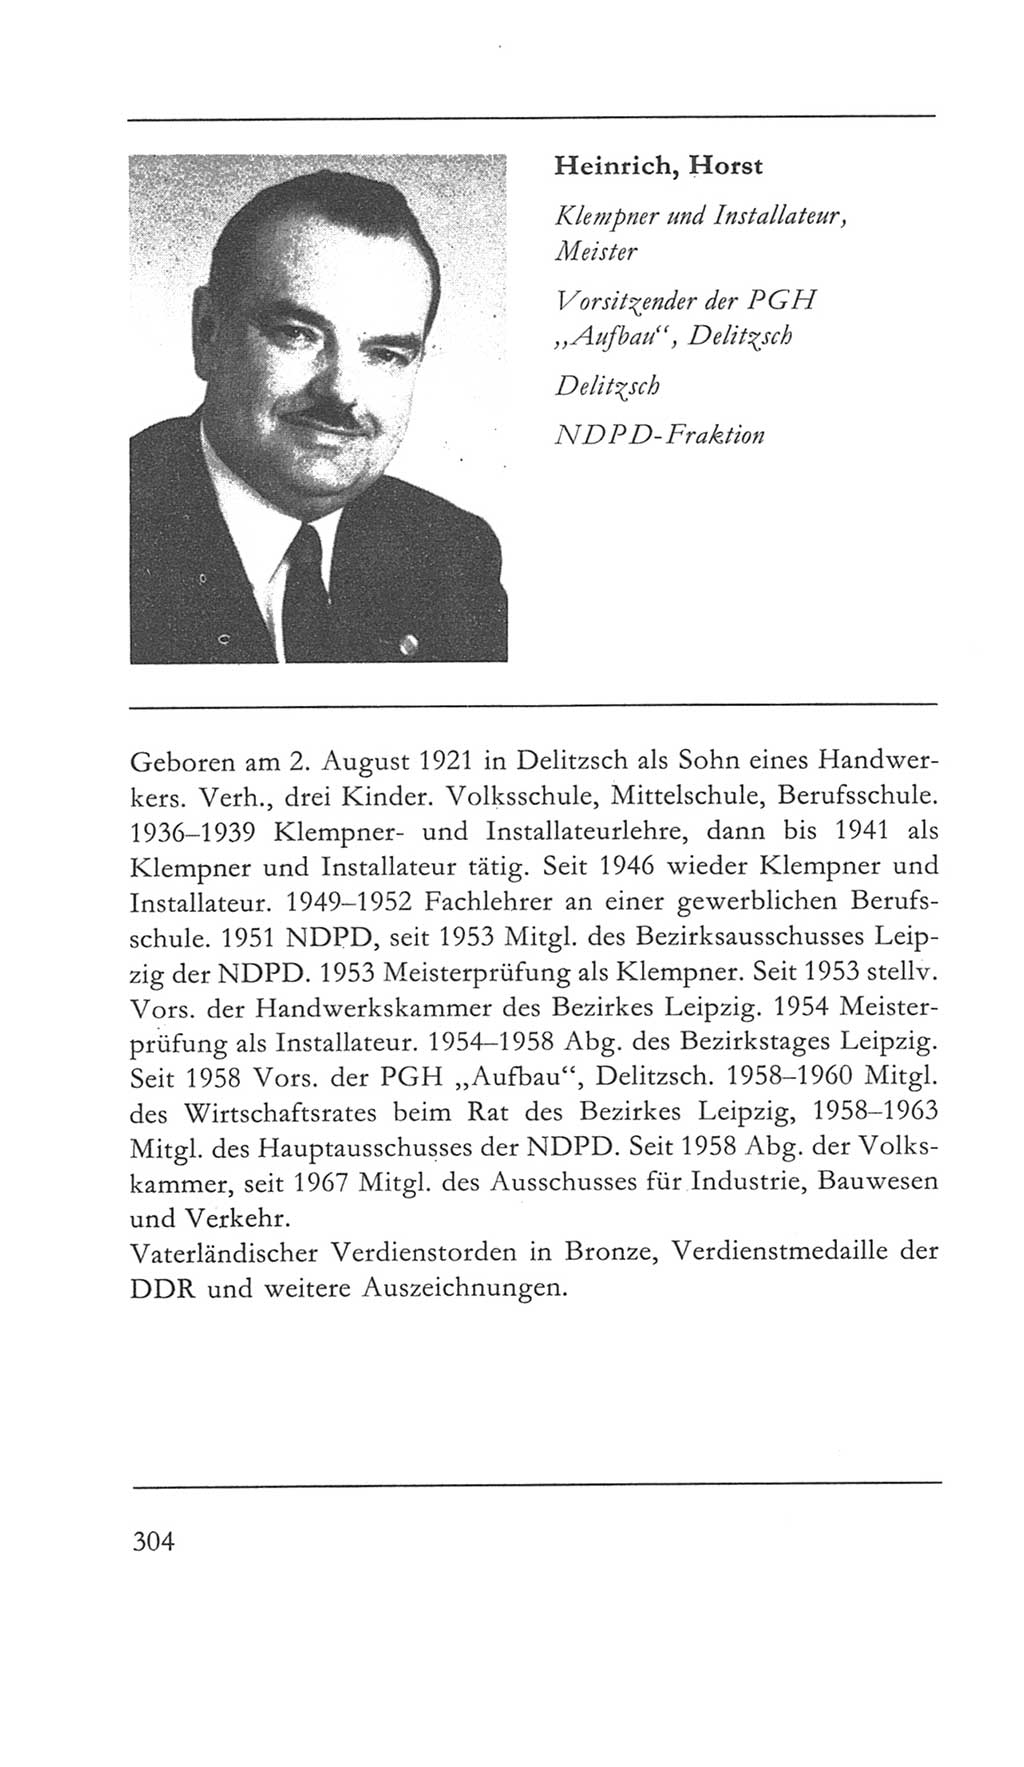 Volkskammer (VK) der Deutschen Demokratischen Republik (DDR) 5. Wahlperiode 1967-1971, Seite 304 (VK. DDR 5. WP. 1967-1971, S. 304)